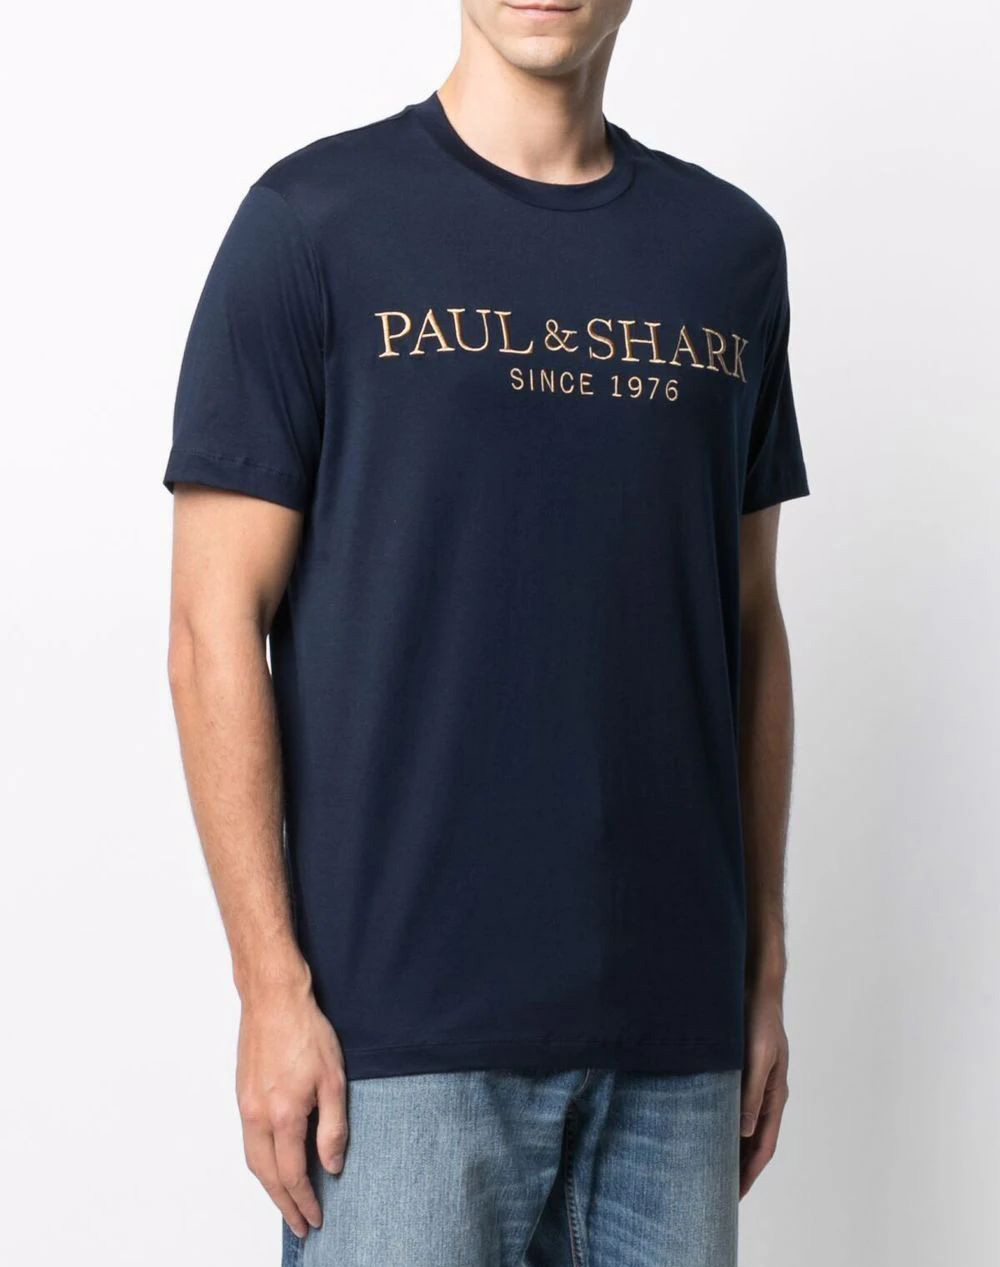 PAUL&SHARK MENS KNITTED T-SHIRT